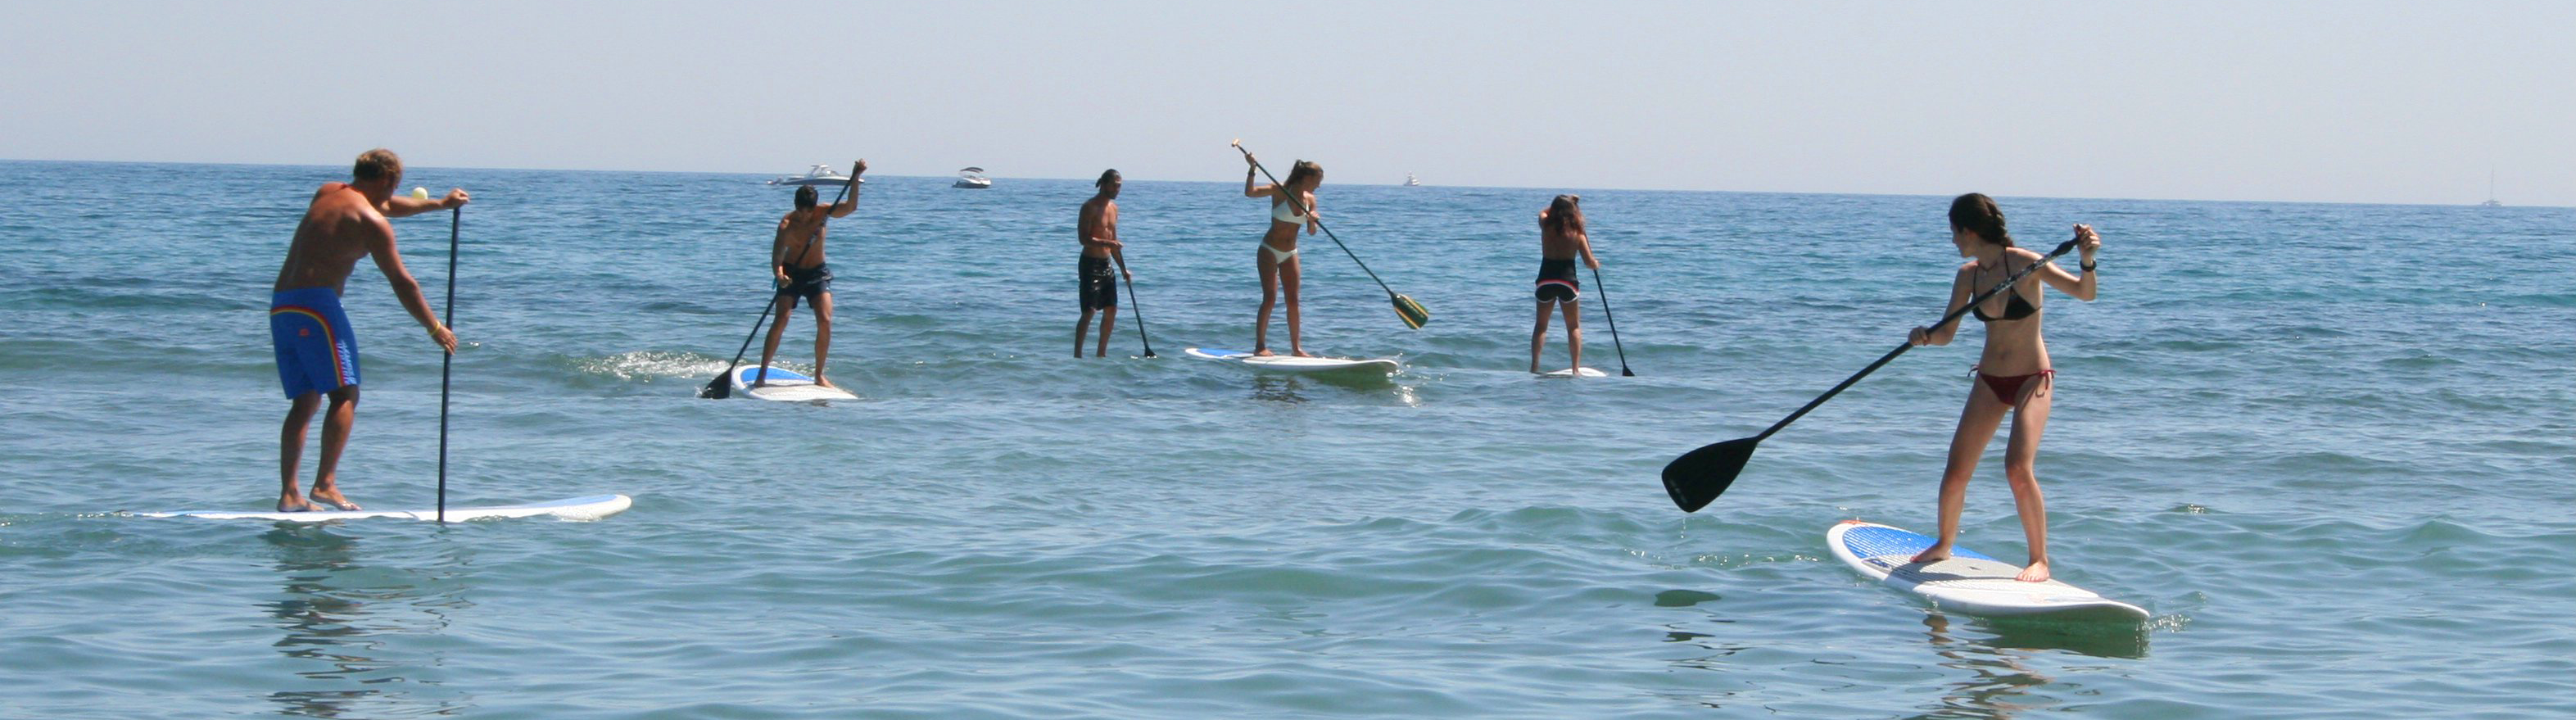 alquiler de tablas de Paddle Surf, Paddle Surf en Zahara de los Atunes